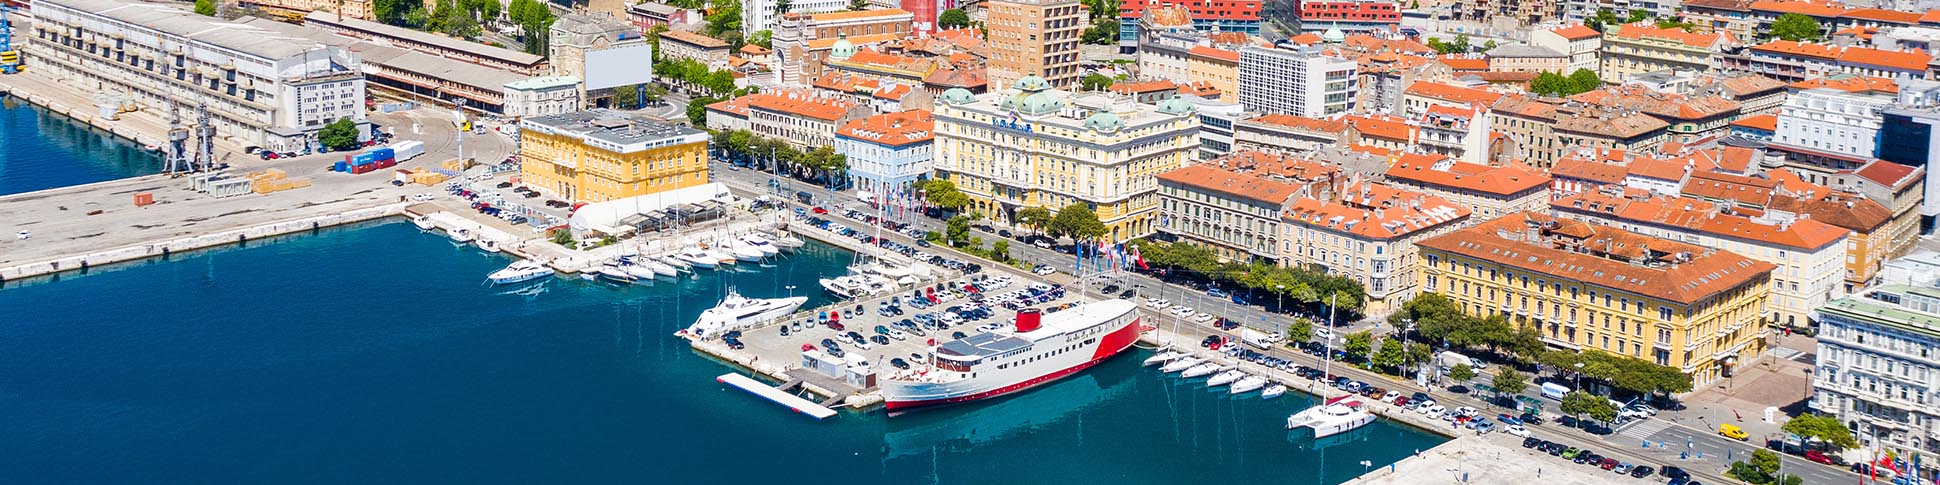 Blick auf das Stadtzentrum von Rijeka